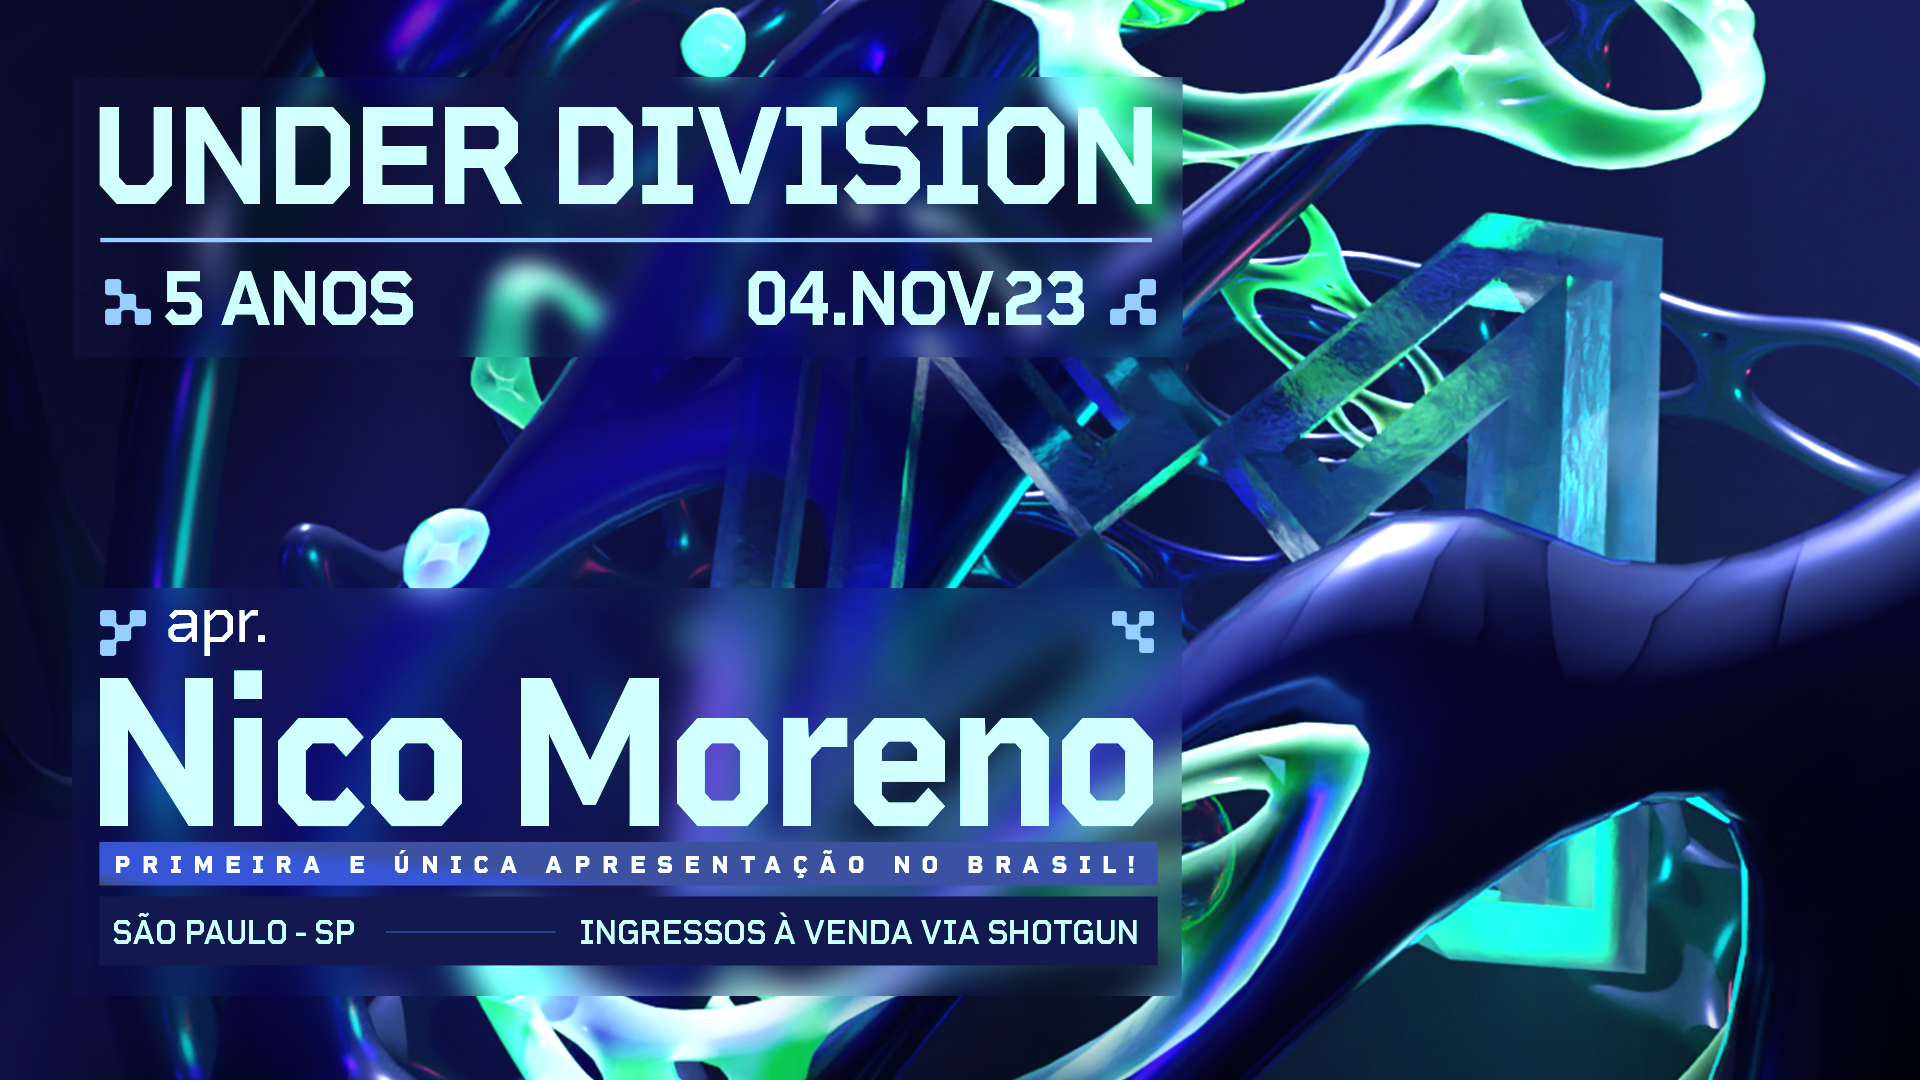 Under Division 5 years invites Nico Moreno - Página frontal